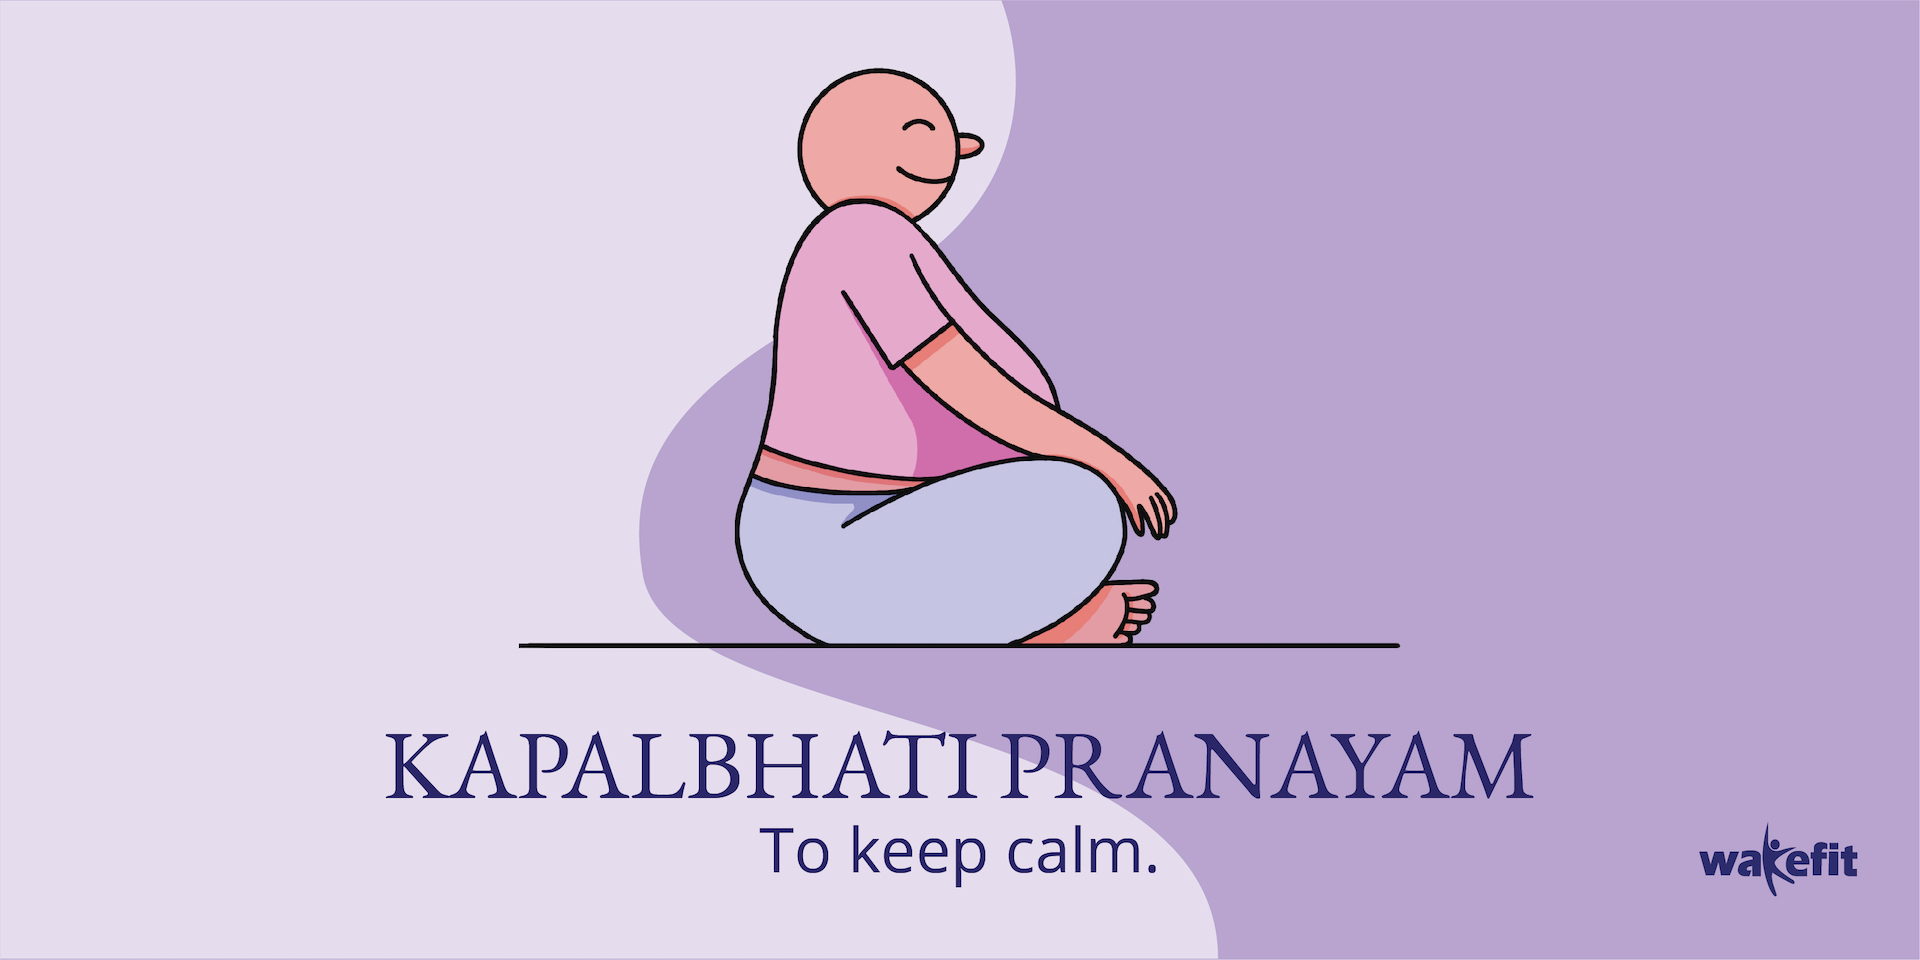 दिल को स्वस्थ रखने के लिए रोजाना जरूर करें भस्त्रिका प्राणायाम, जानें करने  का तरीका - Know How To Bhastrika Pranayama And What Is Benefits Of It